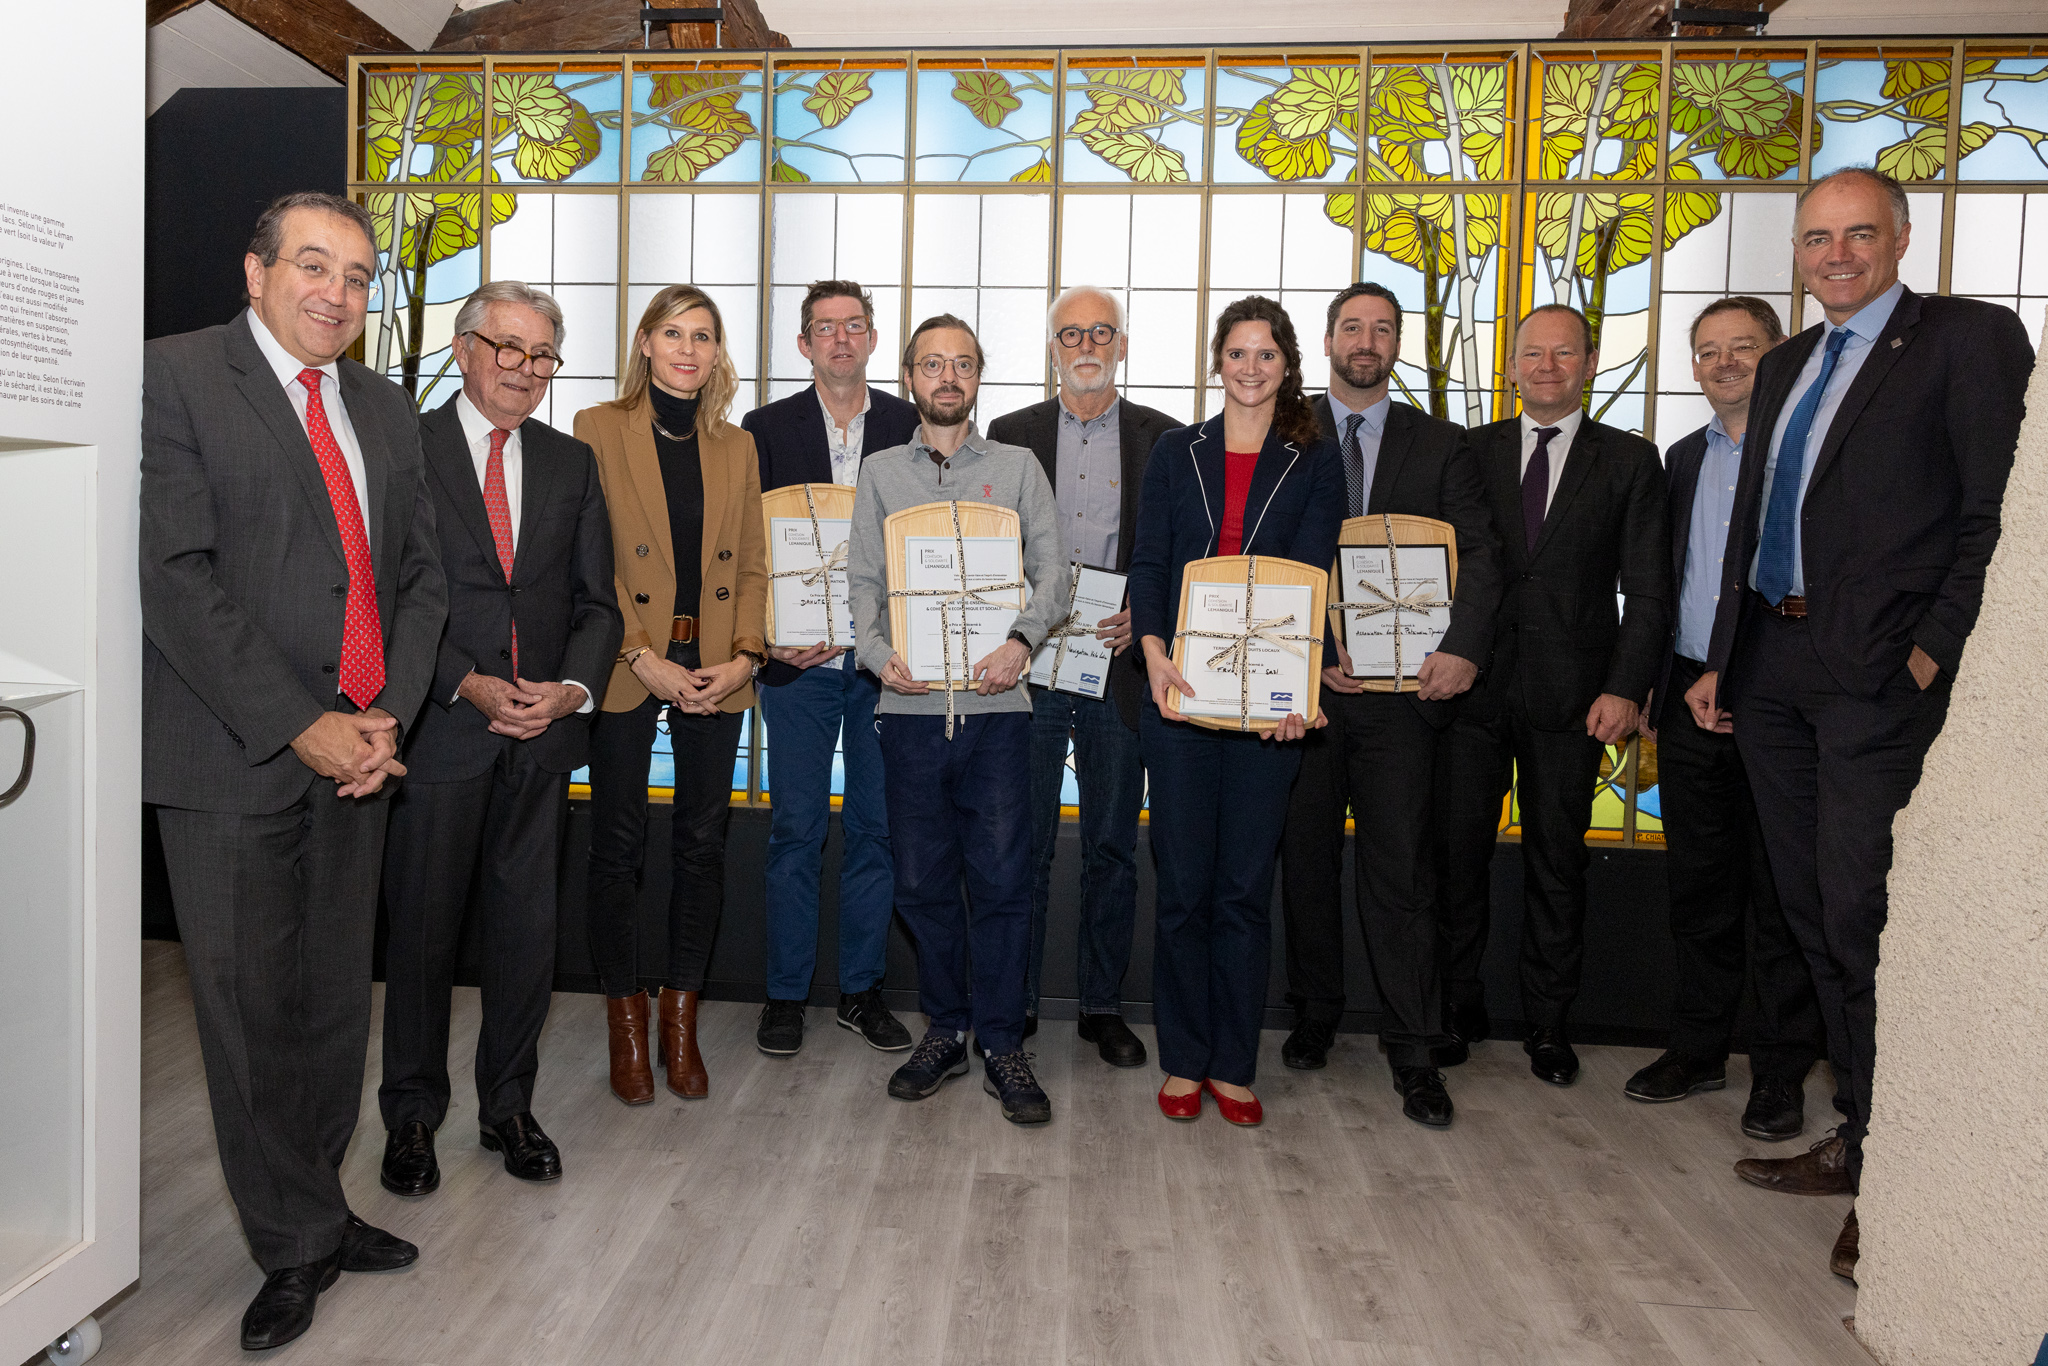 Le Conseil du Léman récompense les plus belles initiatives entrepreneuriales de part et d'autre de la frontière franco-suisse